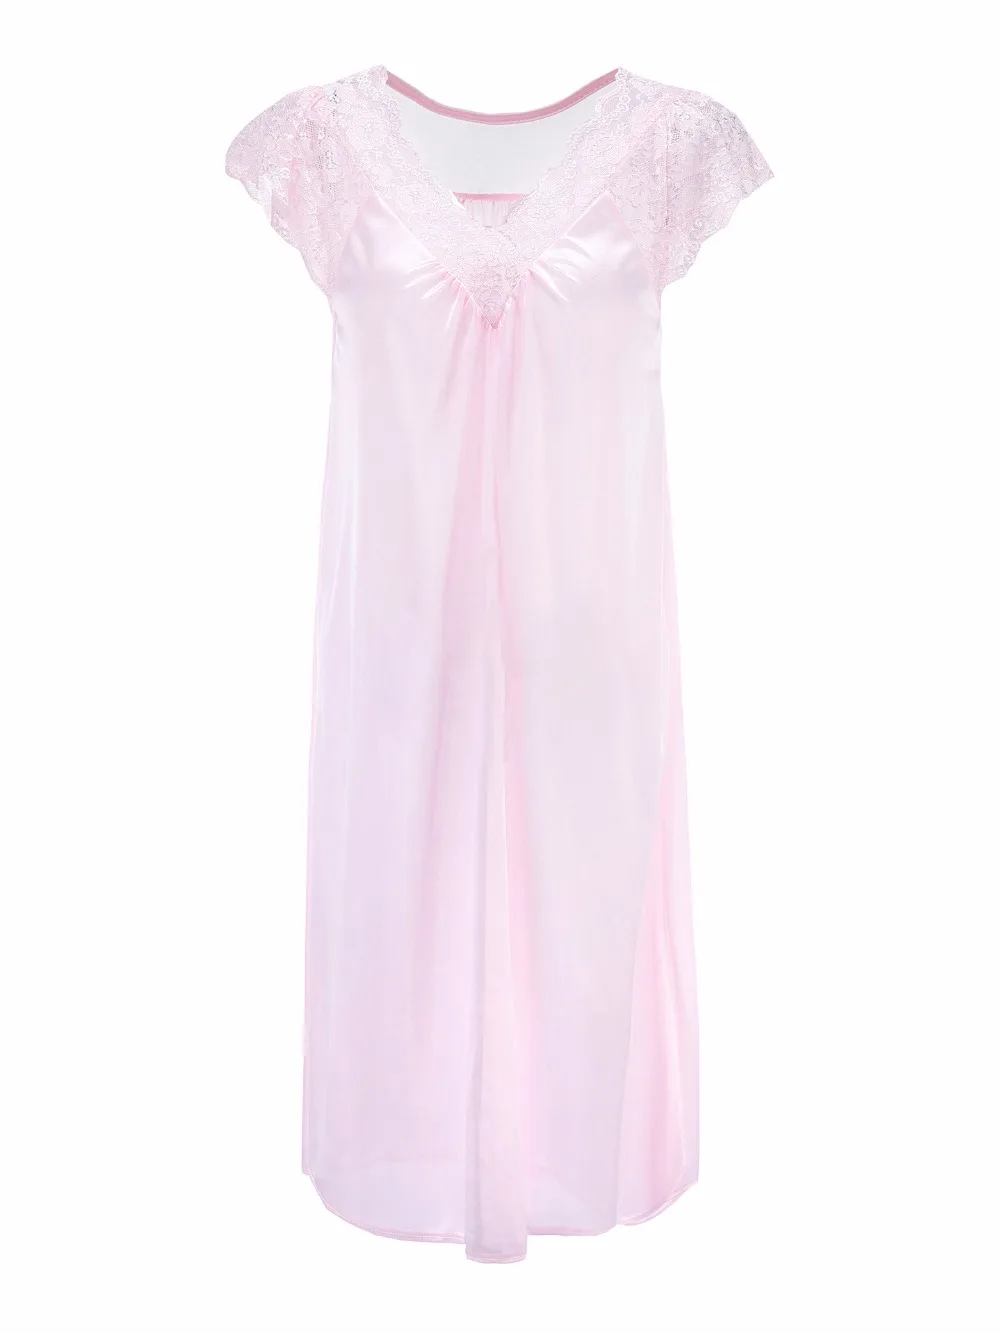 Fdfklak летние новые ночные рубашки с v-образным вырезом, Длинное ночное платье, сексуальное ночное белье, женская ночная рубашка, шелковое Ночное платье Q1020